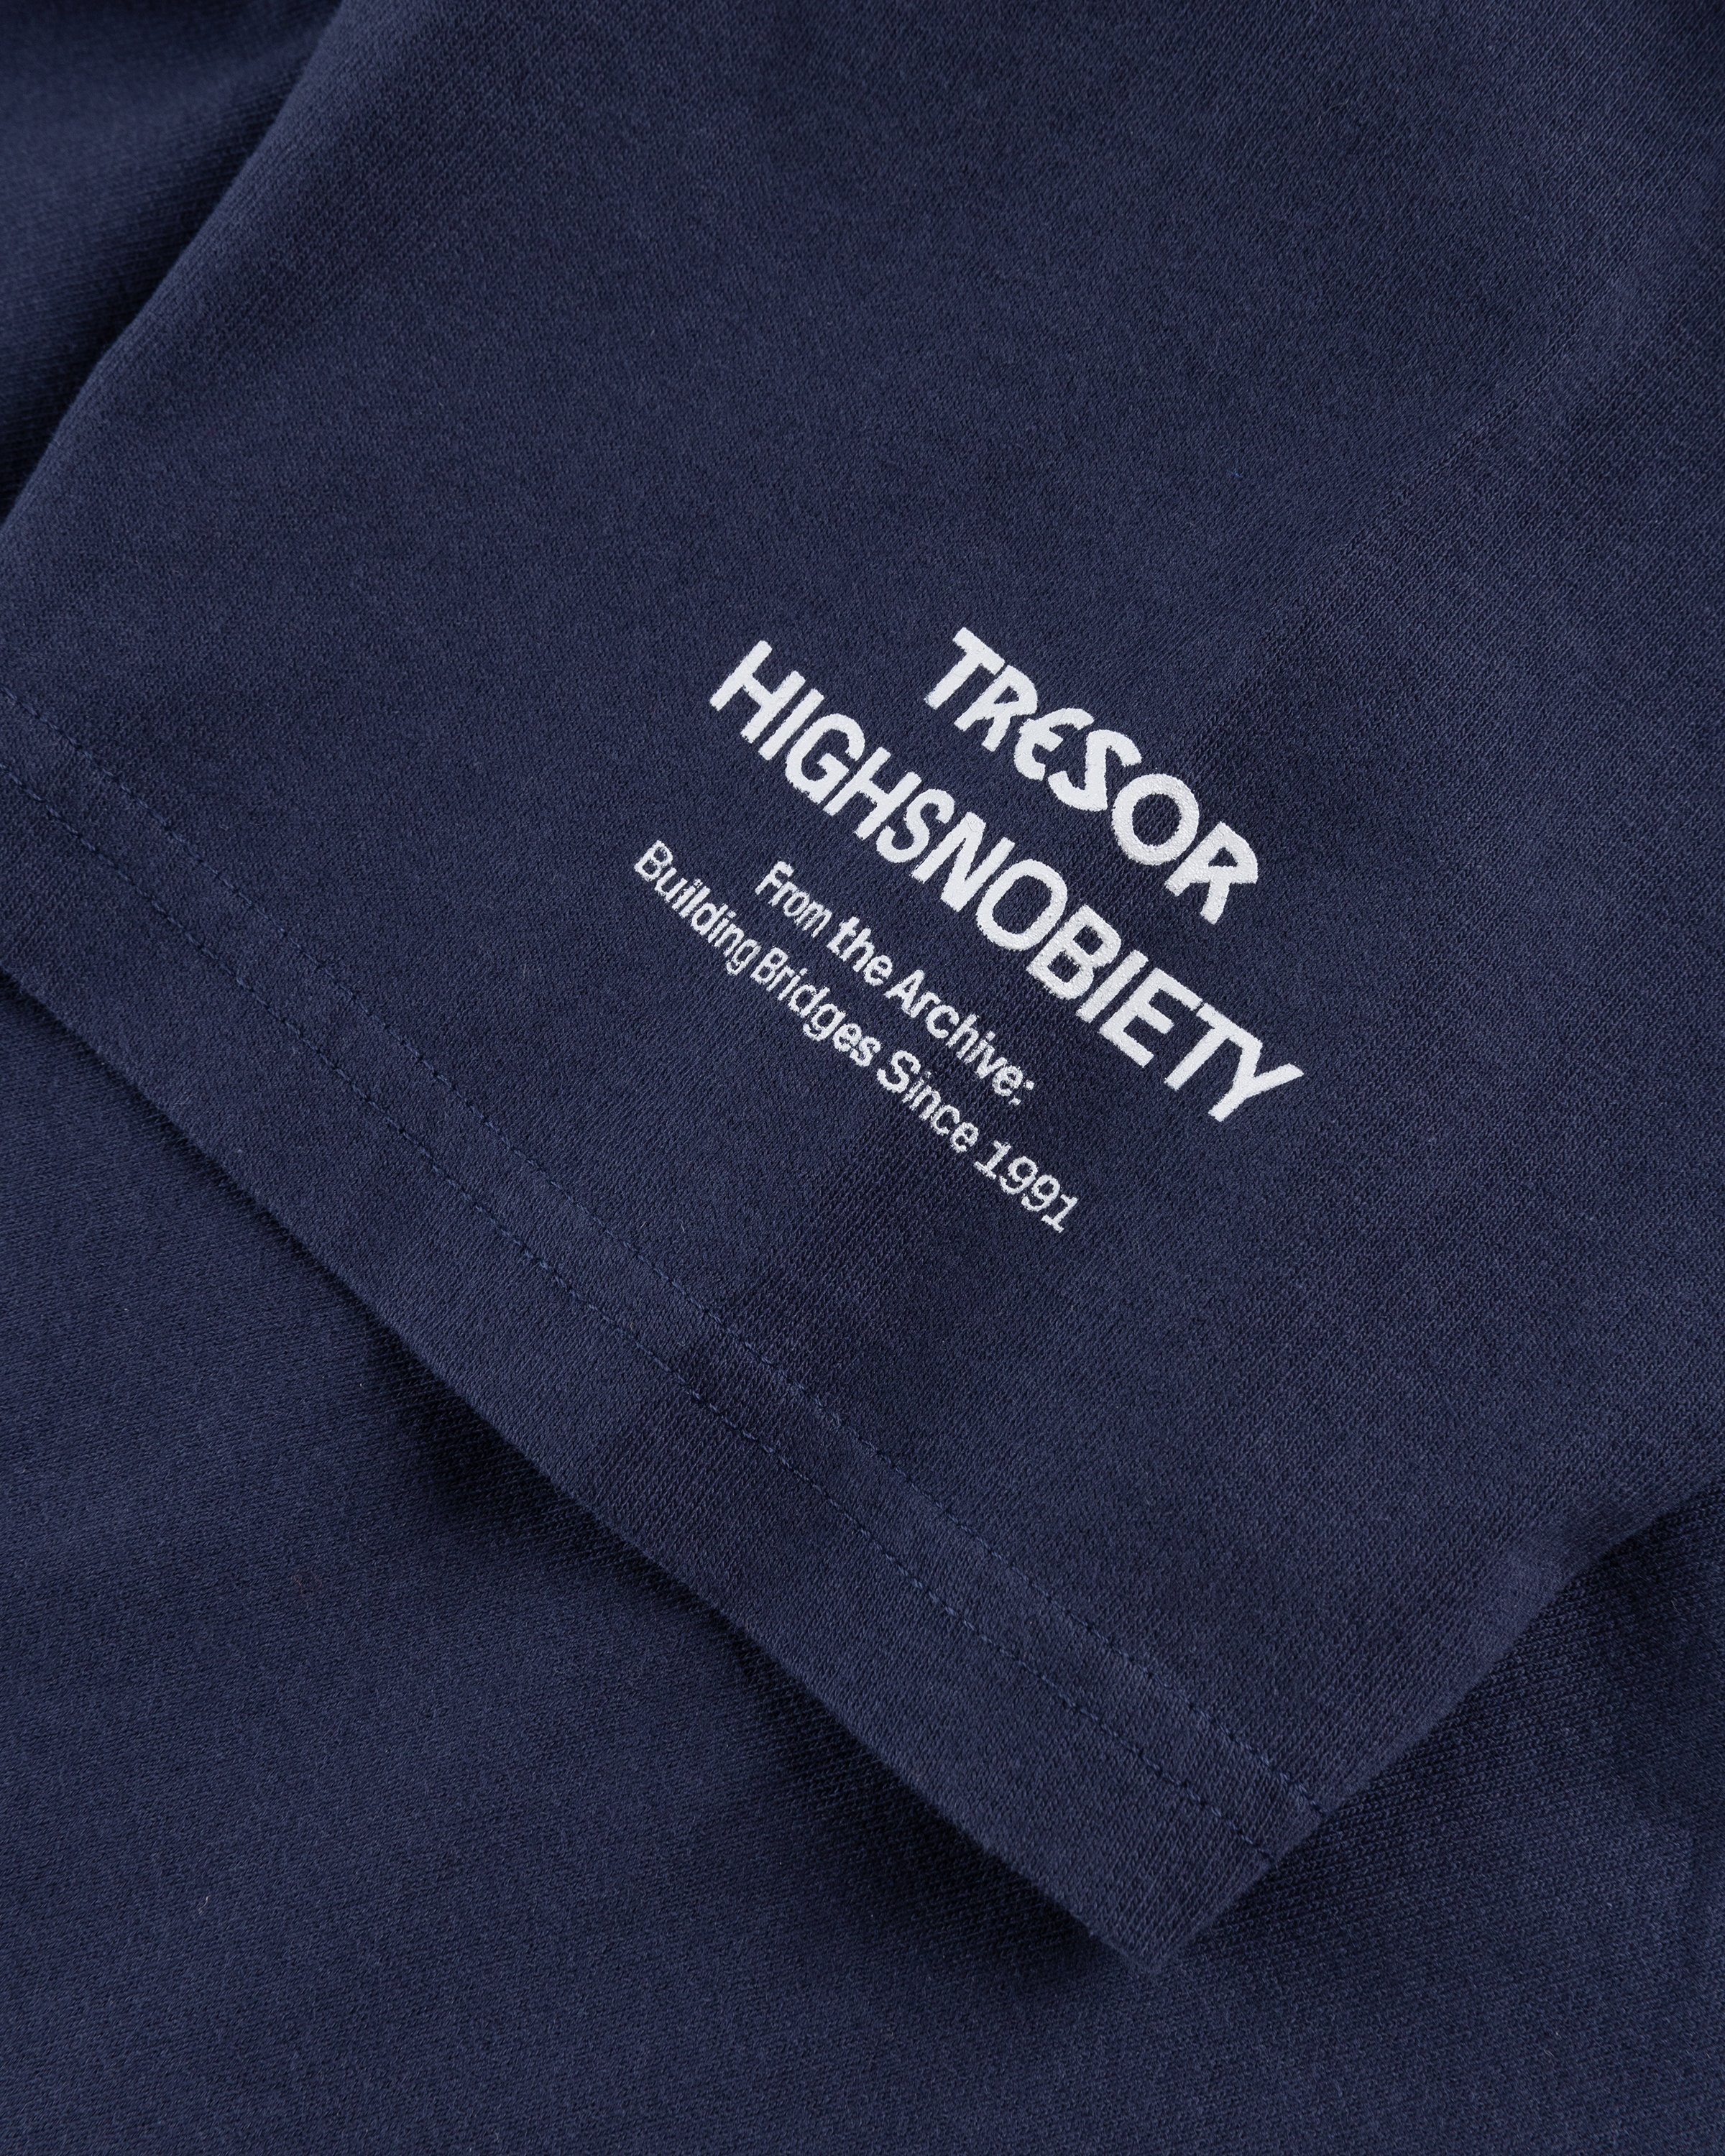 Tresor x Highsnobiety - BERLIN, BERLIN 3 Mensch T-Shirt Navy - Clothing - Navy - Image 6